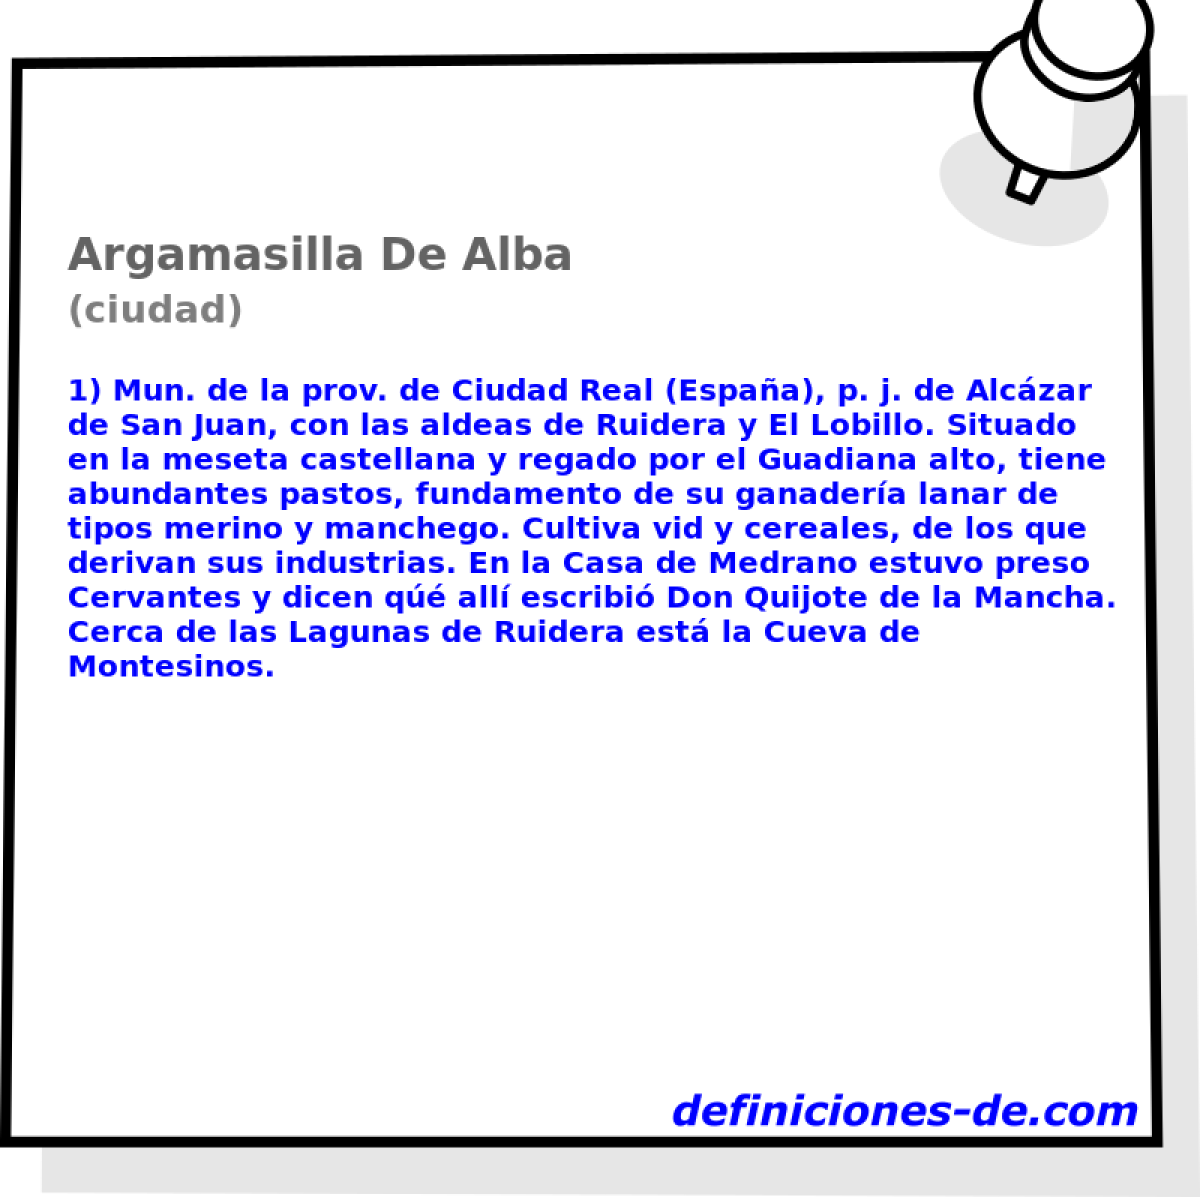 Argamasilla De Alba (ciudad)